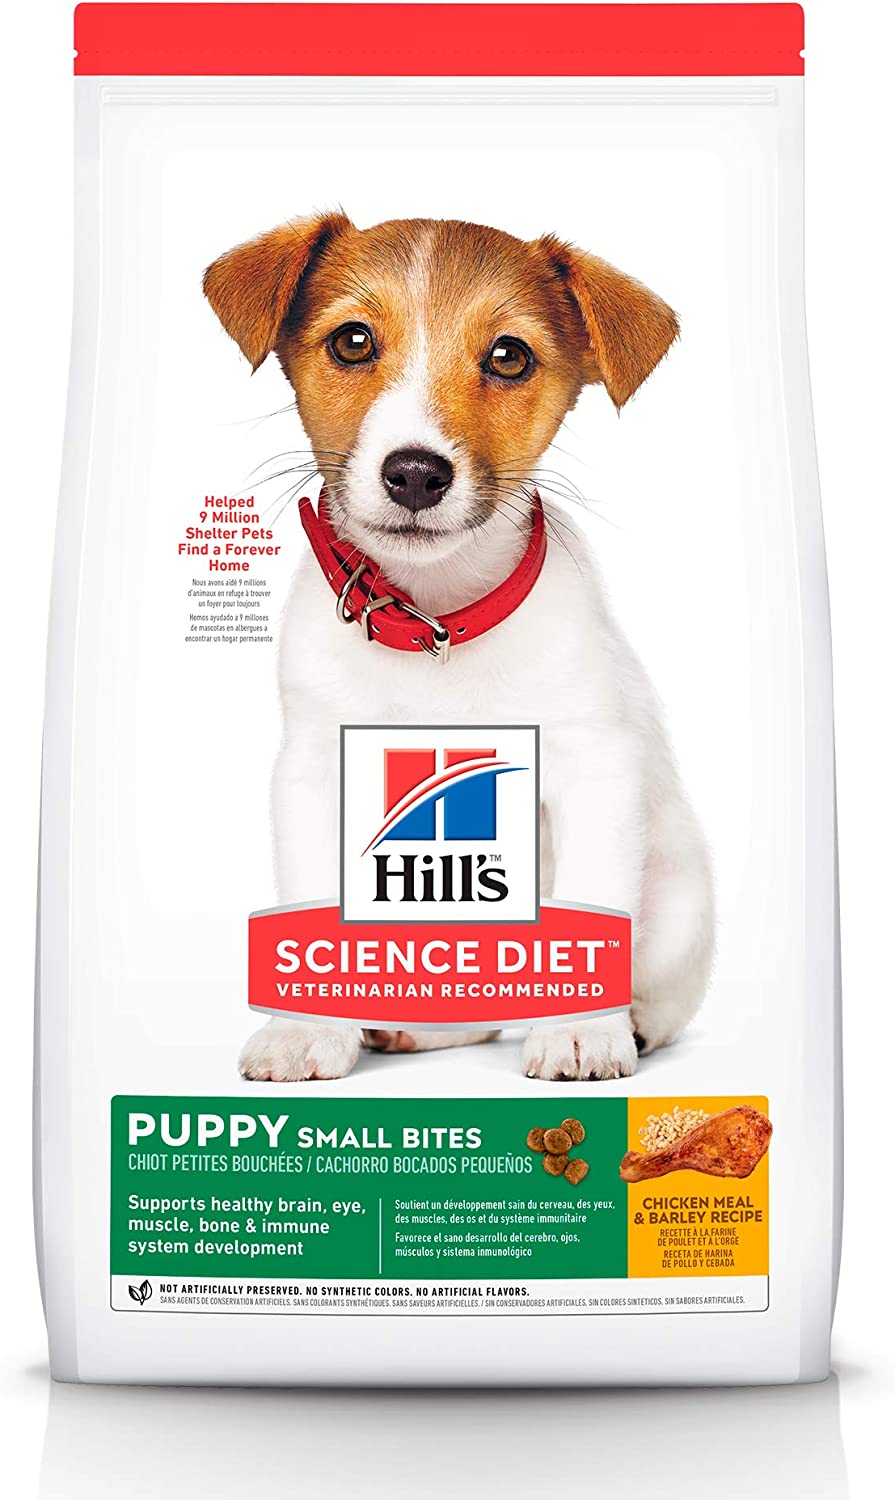 Hill's Science Diet, Alimento para Perro Puppy (Cachorro) Small Bites, Seco (bulto) 2kg